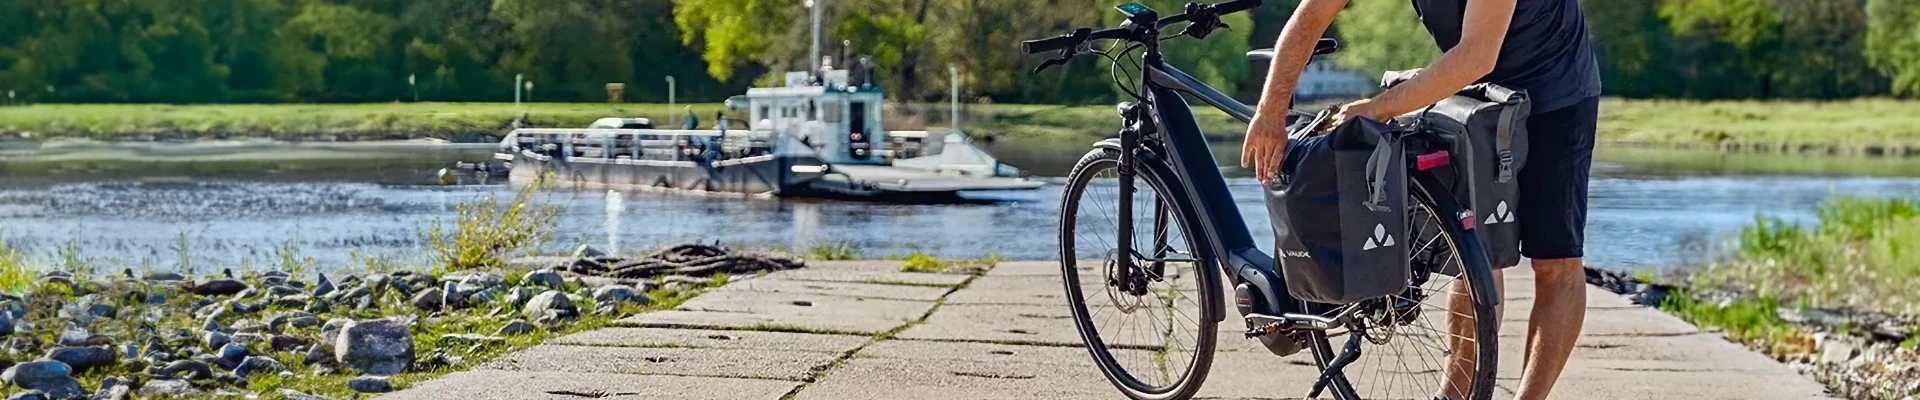 rower przy rzece